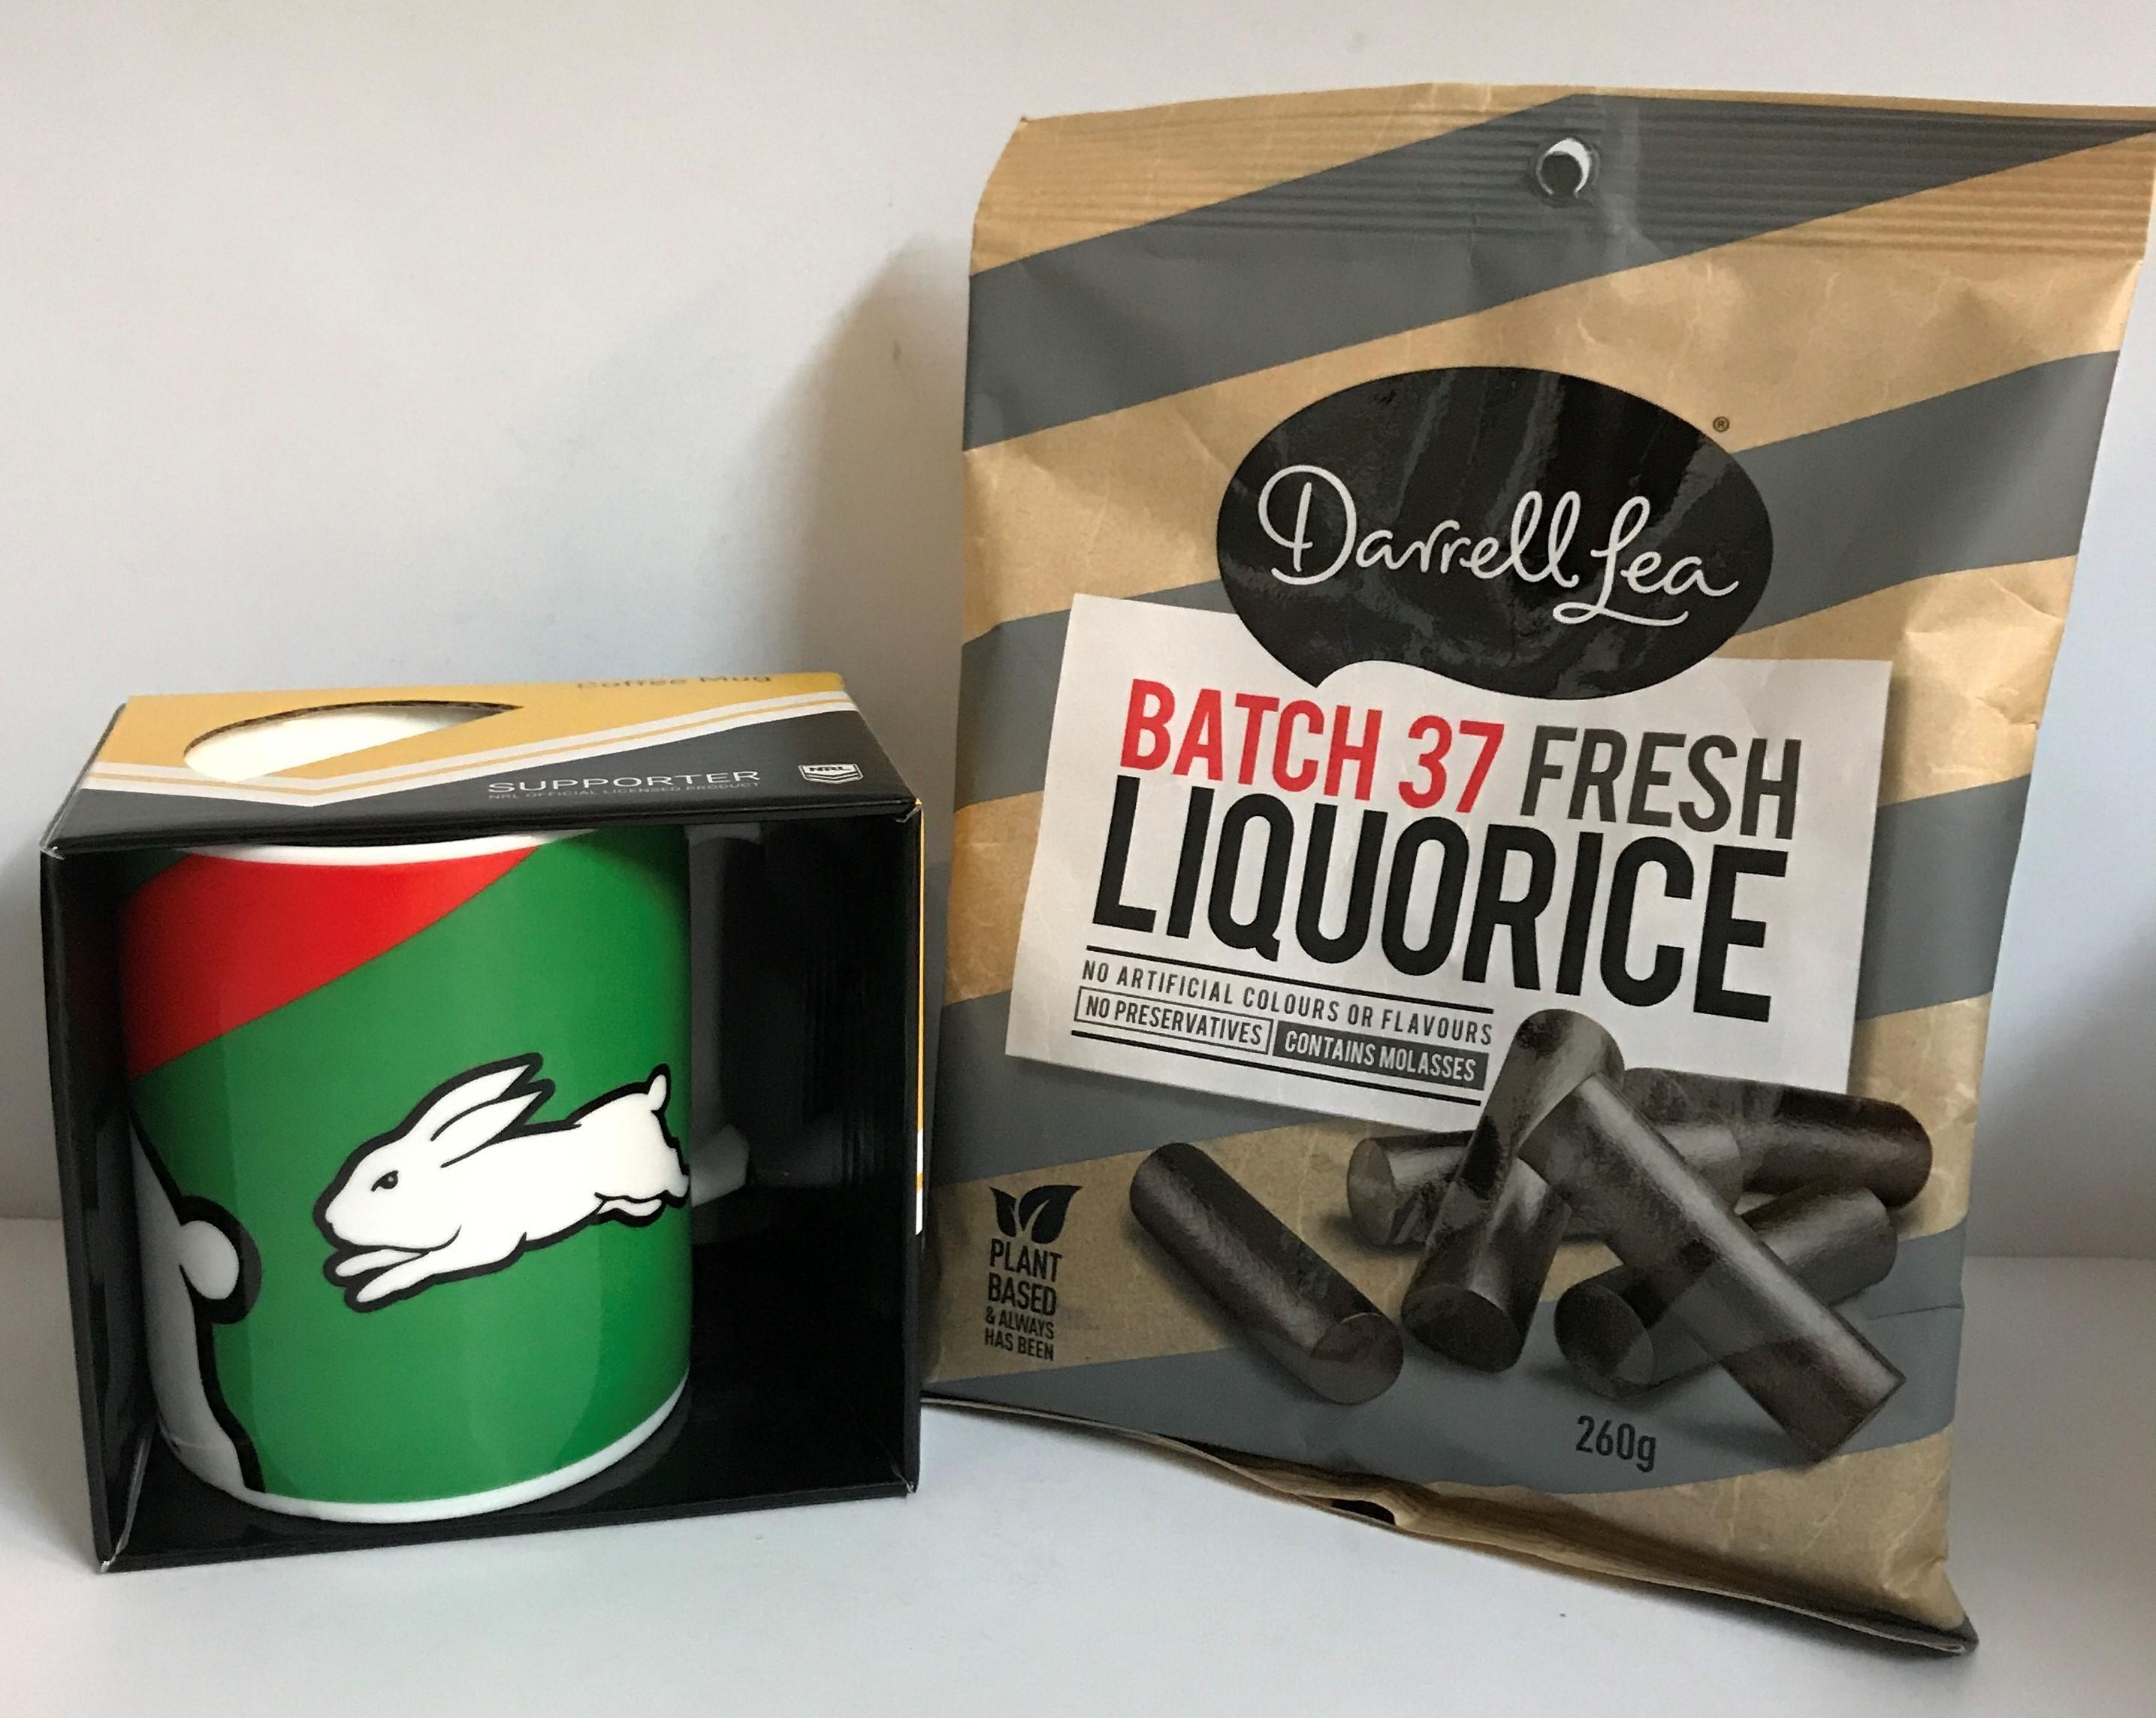 NRL Logo Coffee Mug + Darrell Lea Batch 37 Fresh Liquorice 260g in Gold Bag